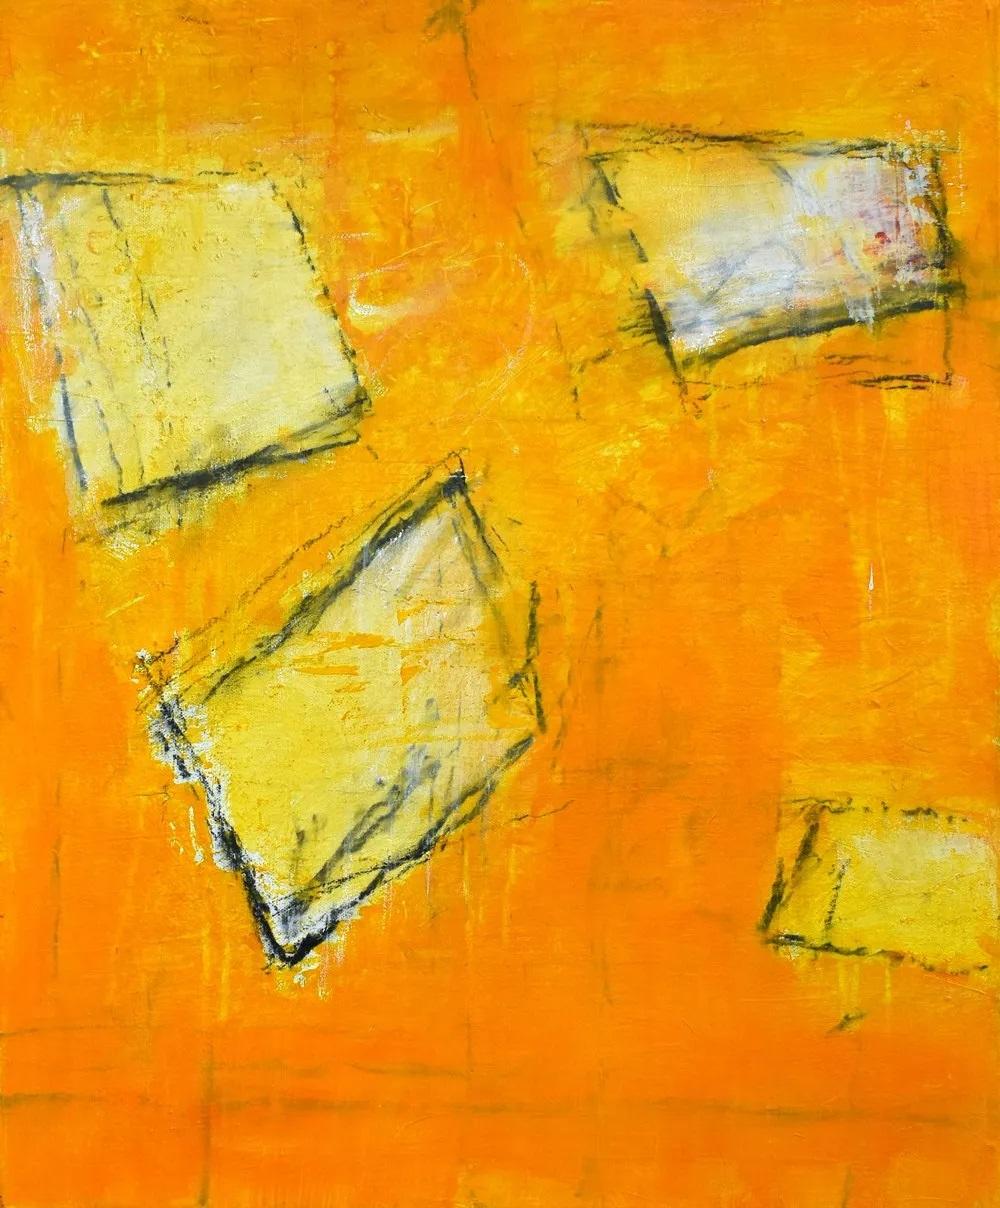 « Le poème » - Peinture expressionniste abstraite contemporaine aux tons orange et jaune